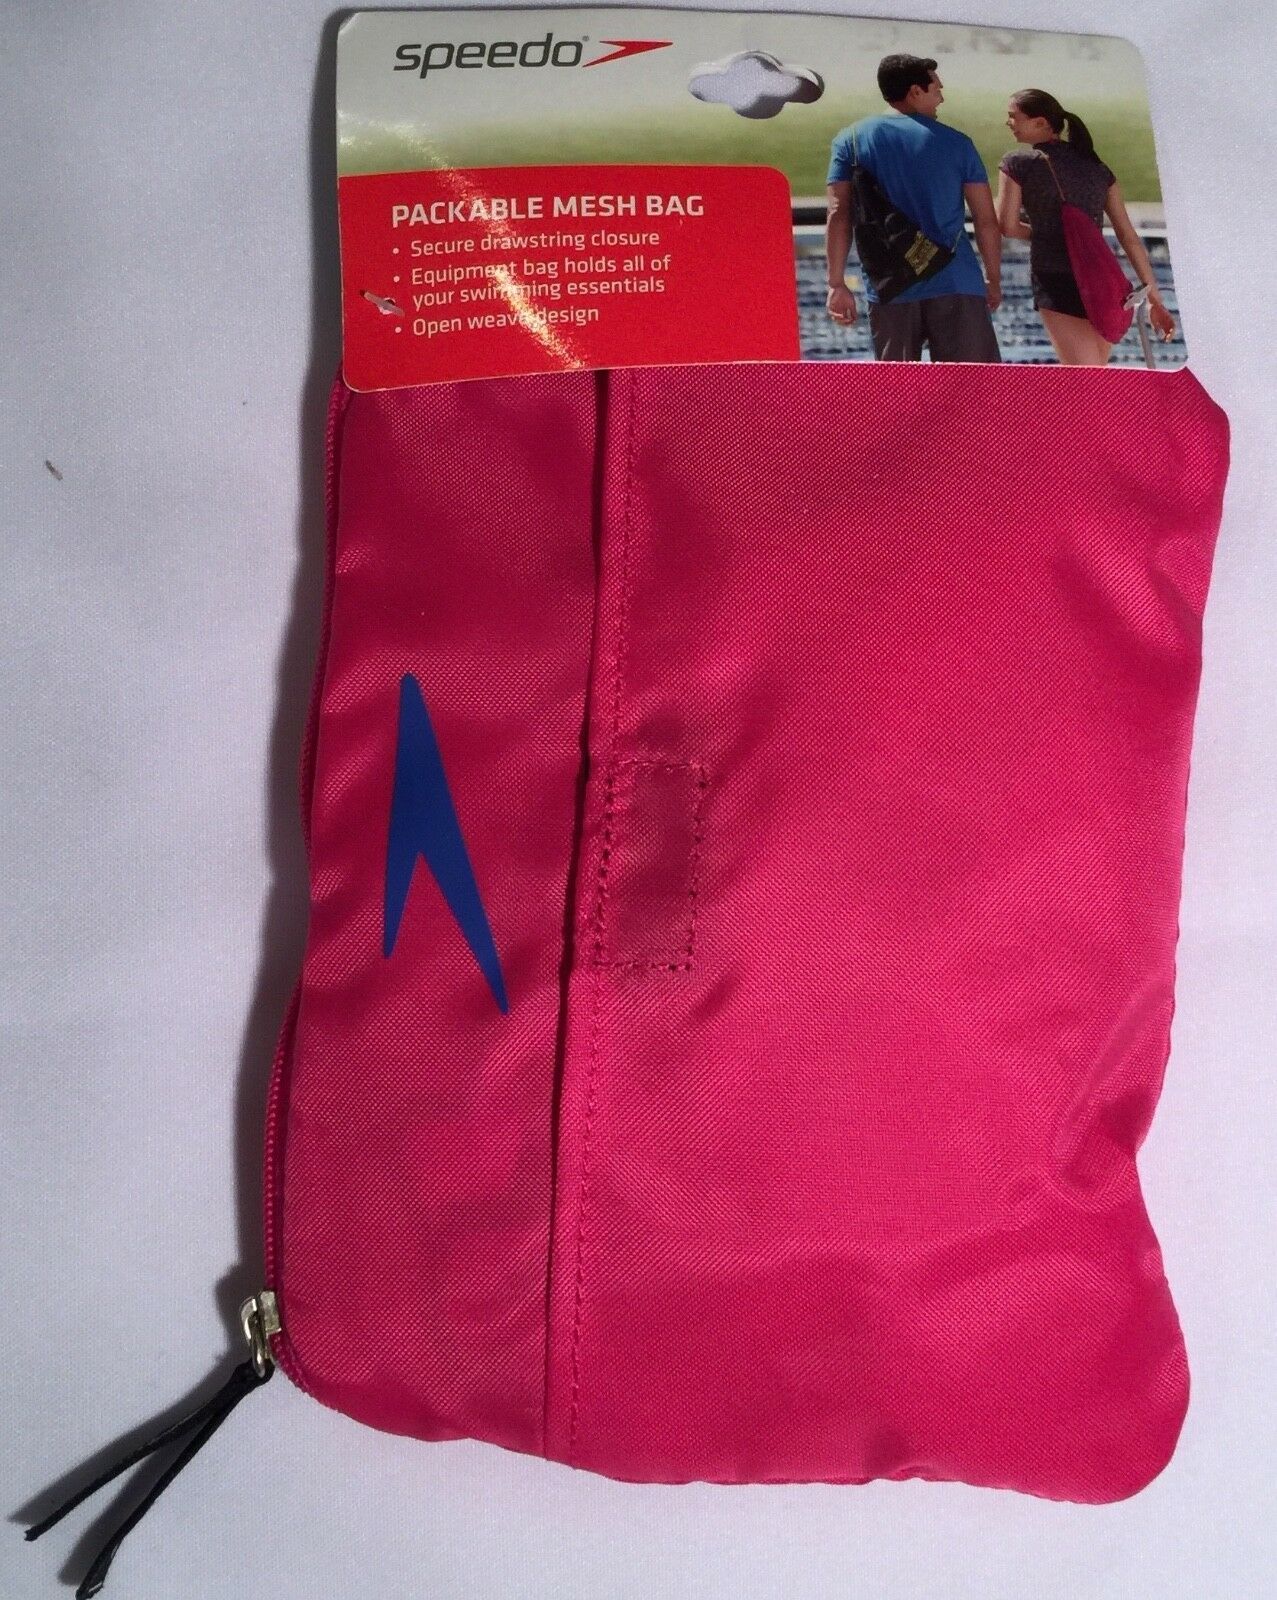 Speedo Pink Packable Mesh Bag - $18.00